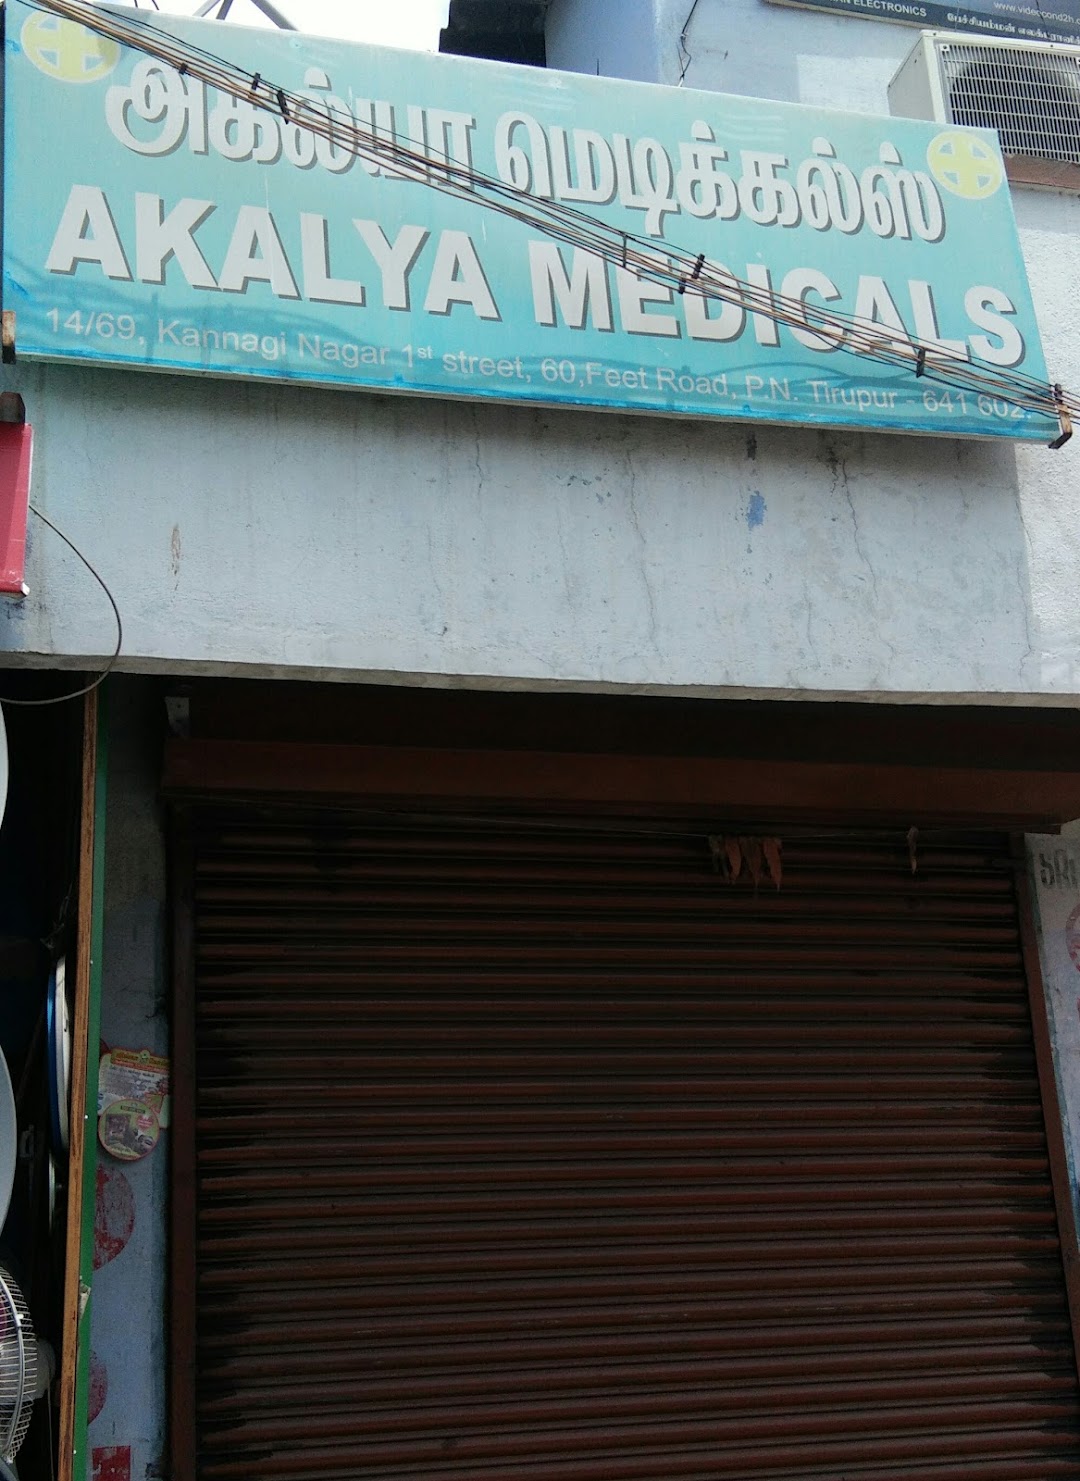 Akalya Medicals